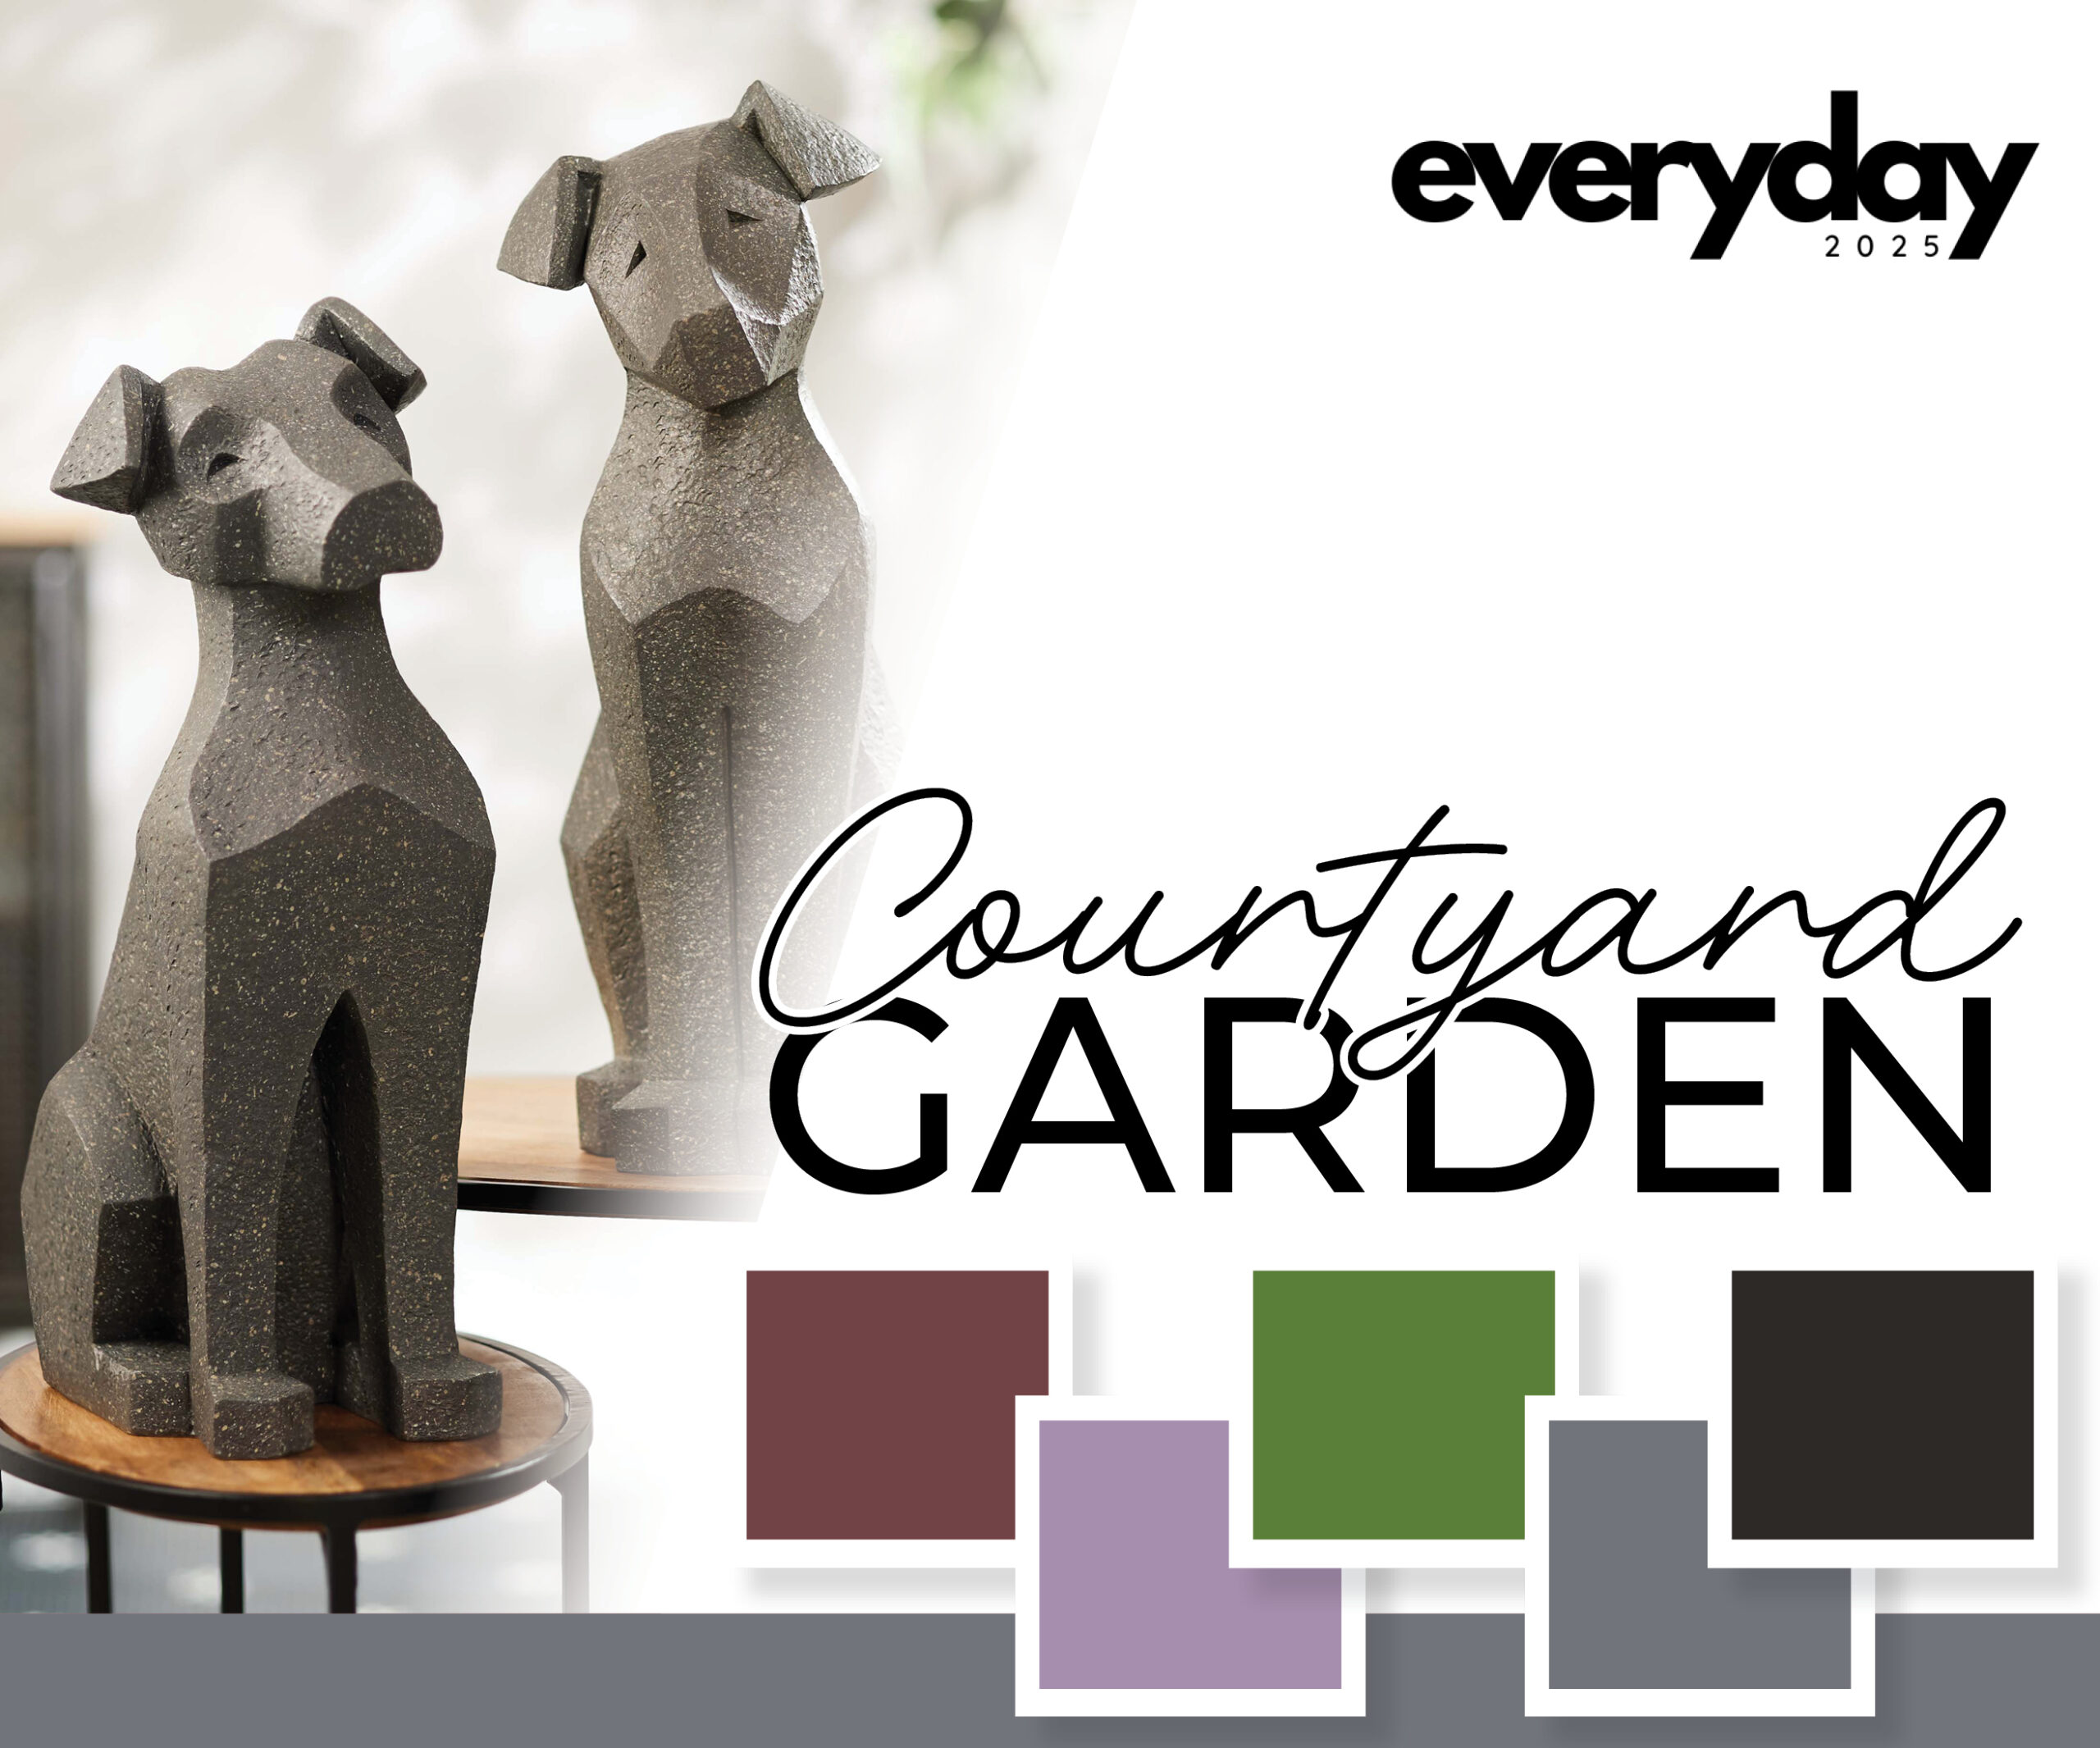 Courtyard Garden Collection